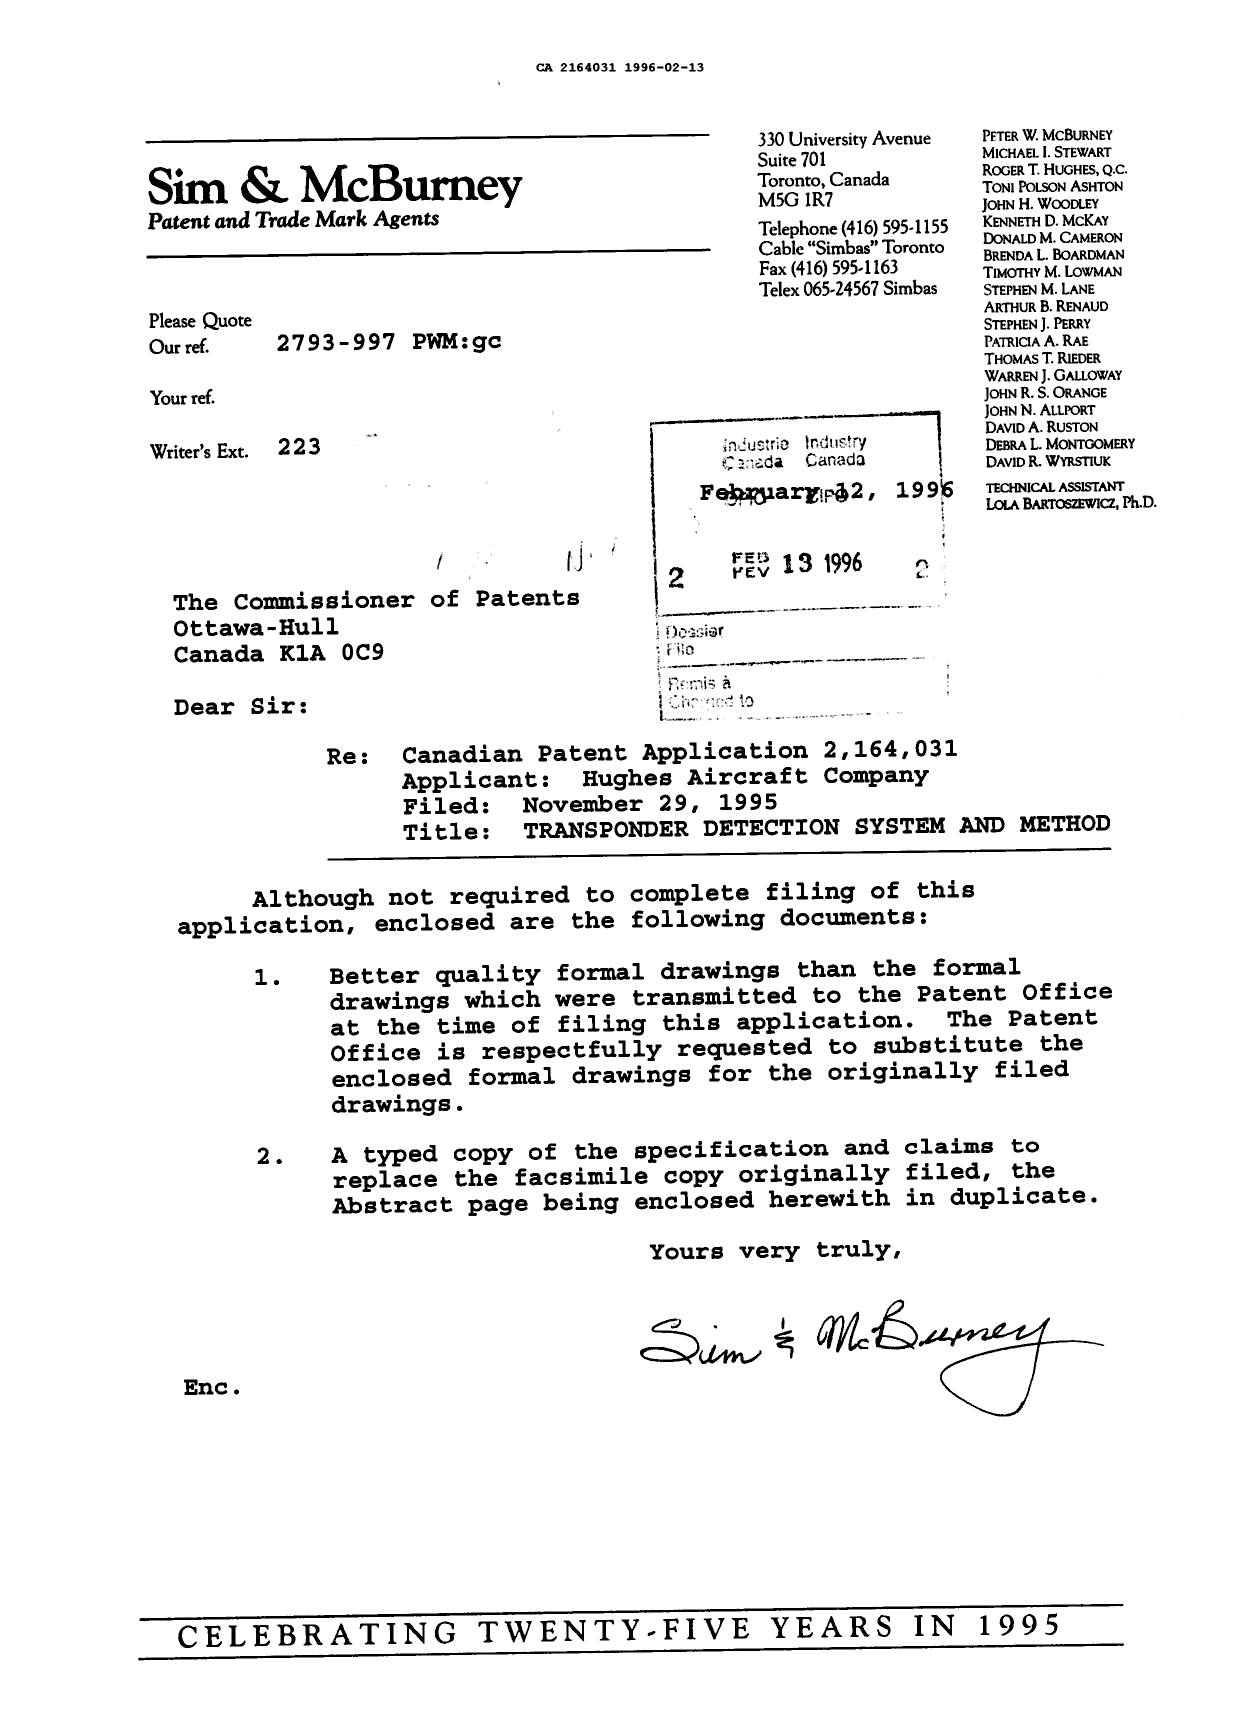 Document de brevet canadien 2164031. Correspondance de la poursuite 19960213. Image 1 de 1